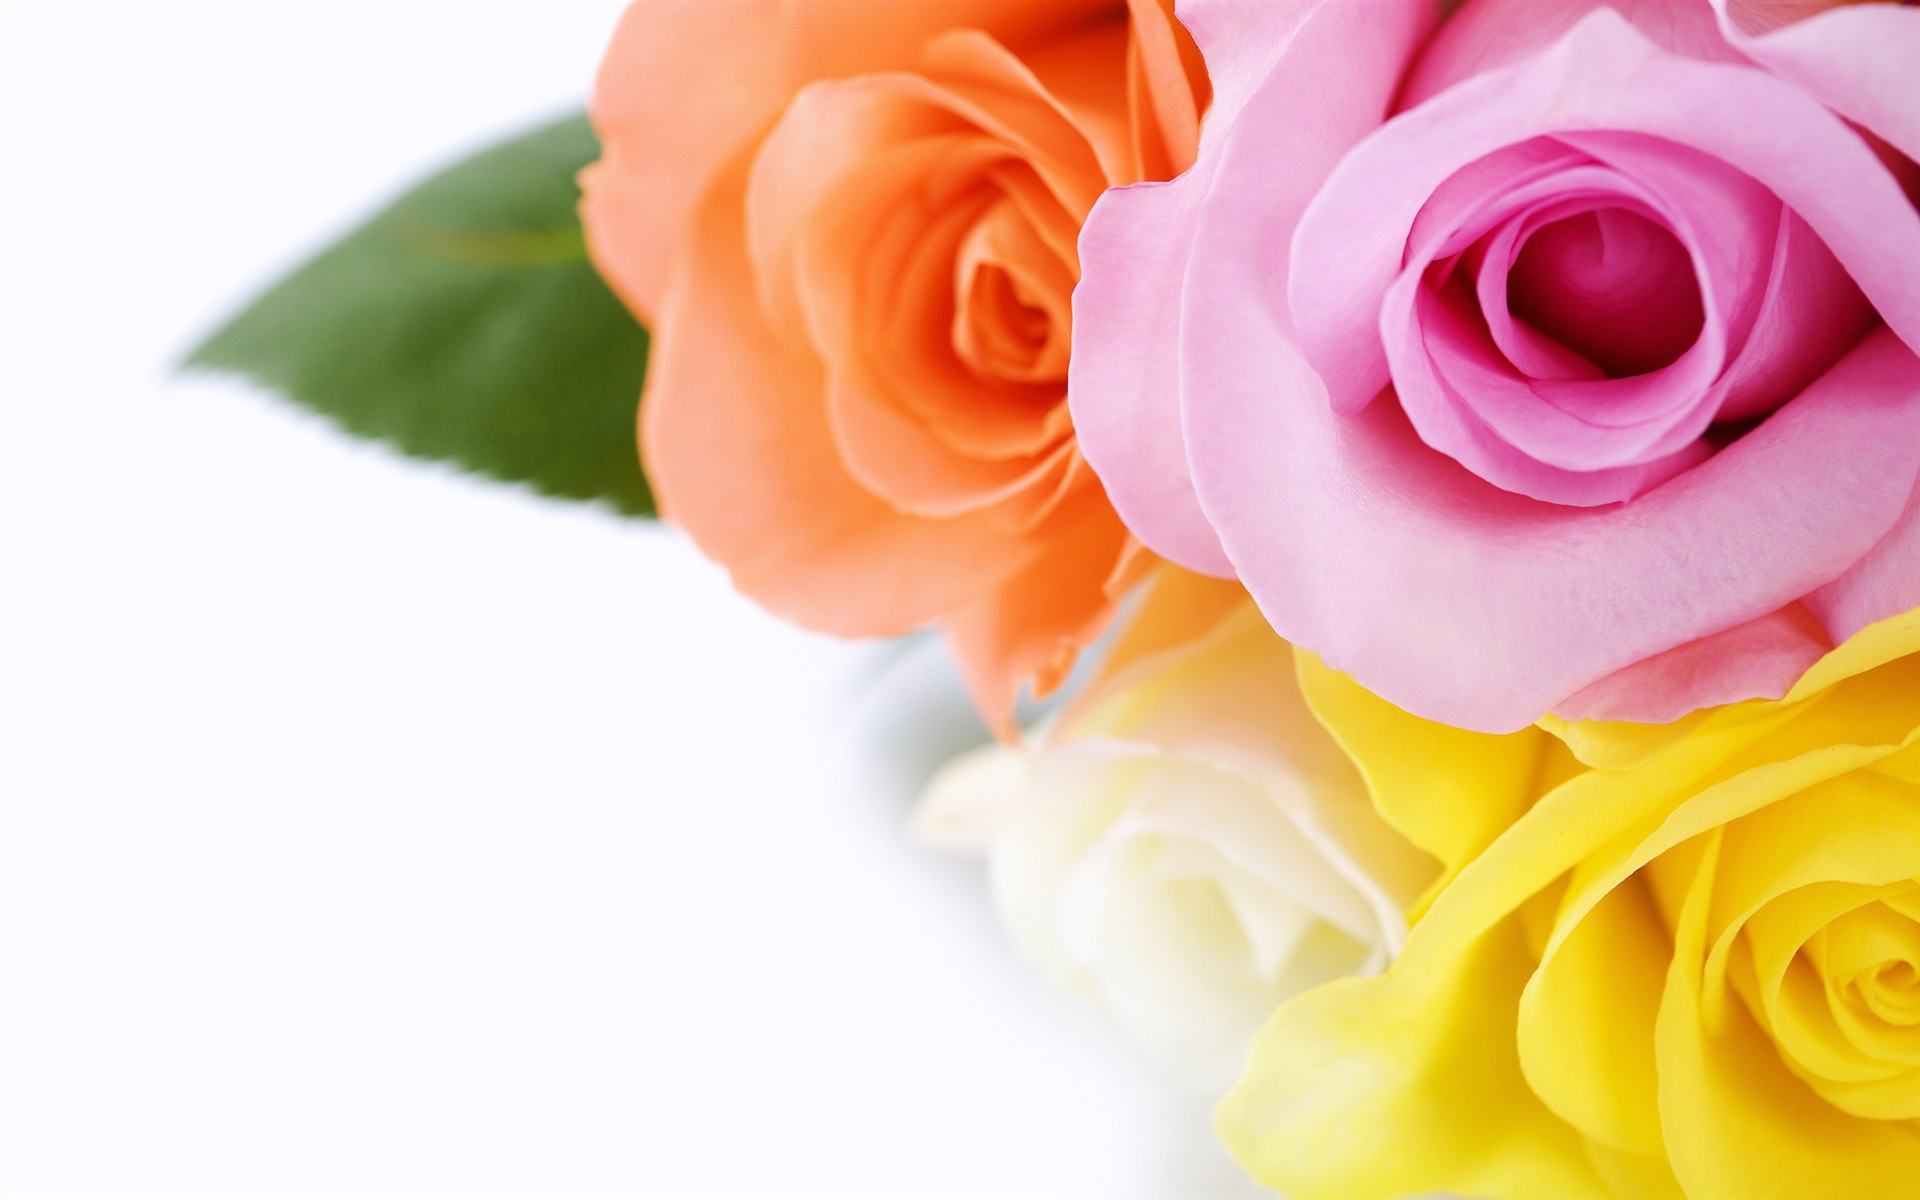 Beautiful Rose Images Hd - HD Wallpaper 